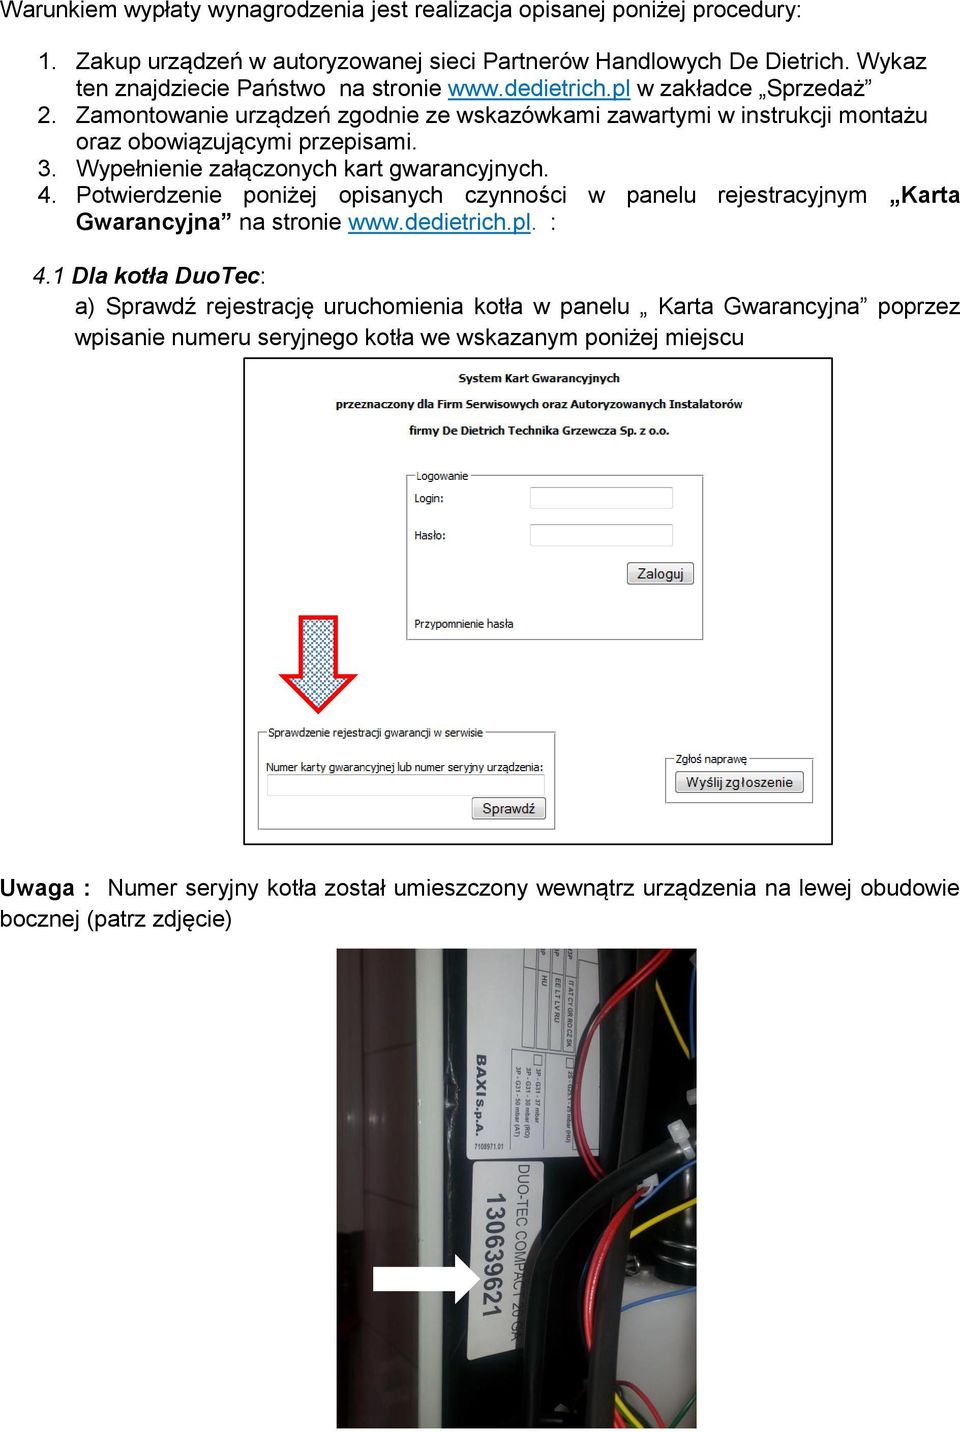 Wypełnienie załączonych kart gwarancyjnych. 4. Potwierdzenie poniżej opisanych czynności w panelu rejestracyjnym Karta Gwarancyjna na stronie www.dedietrich.pl. : 4.